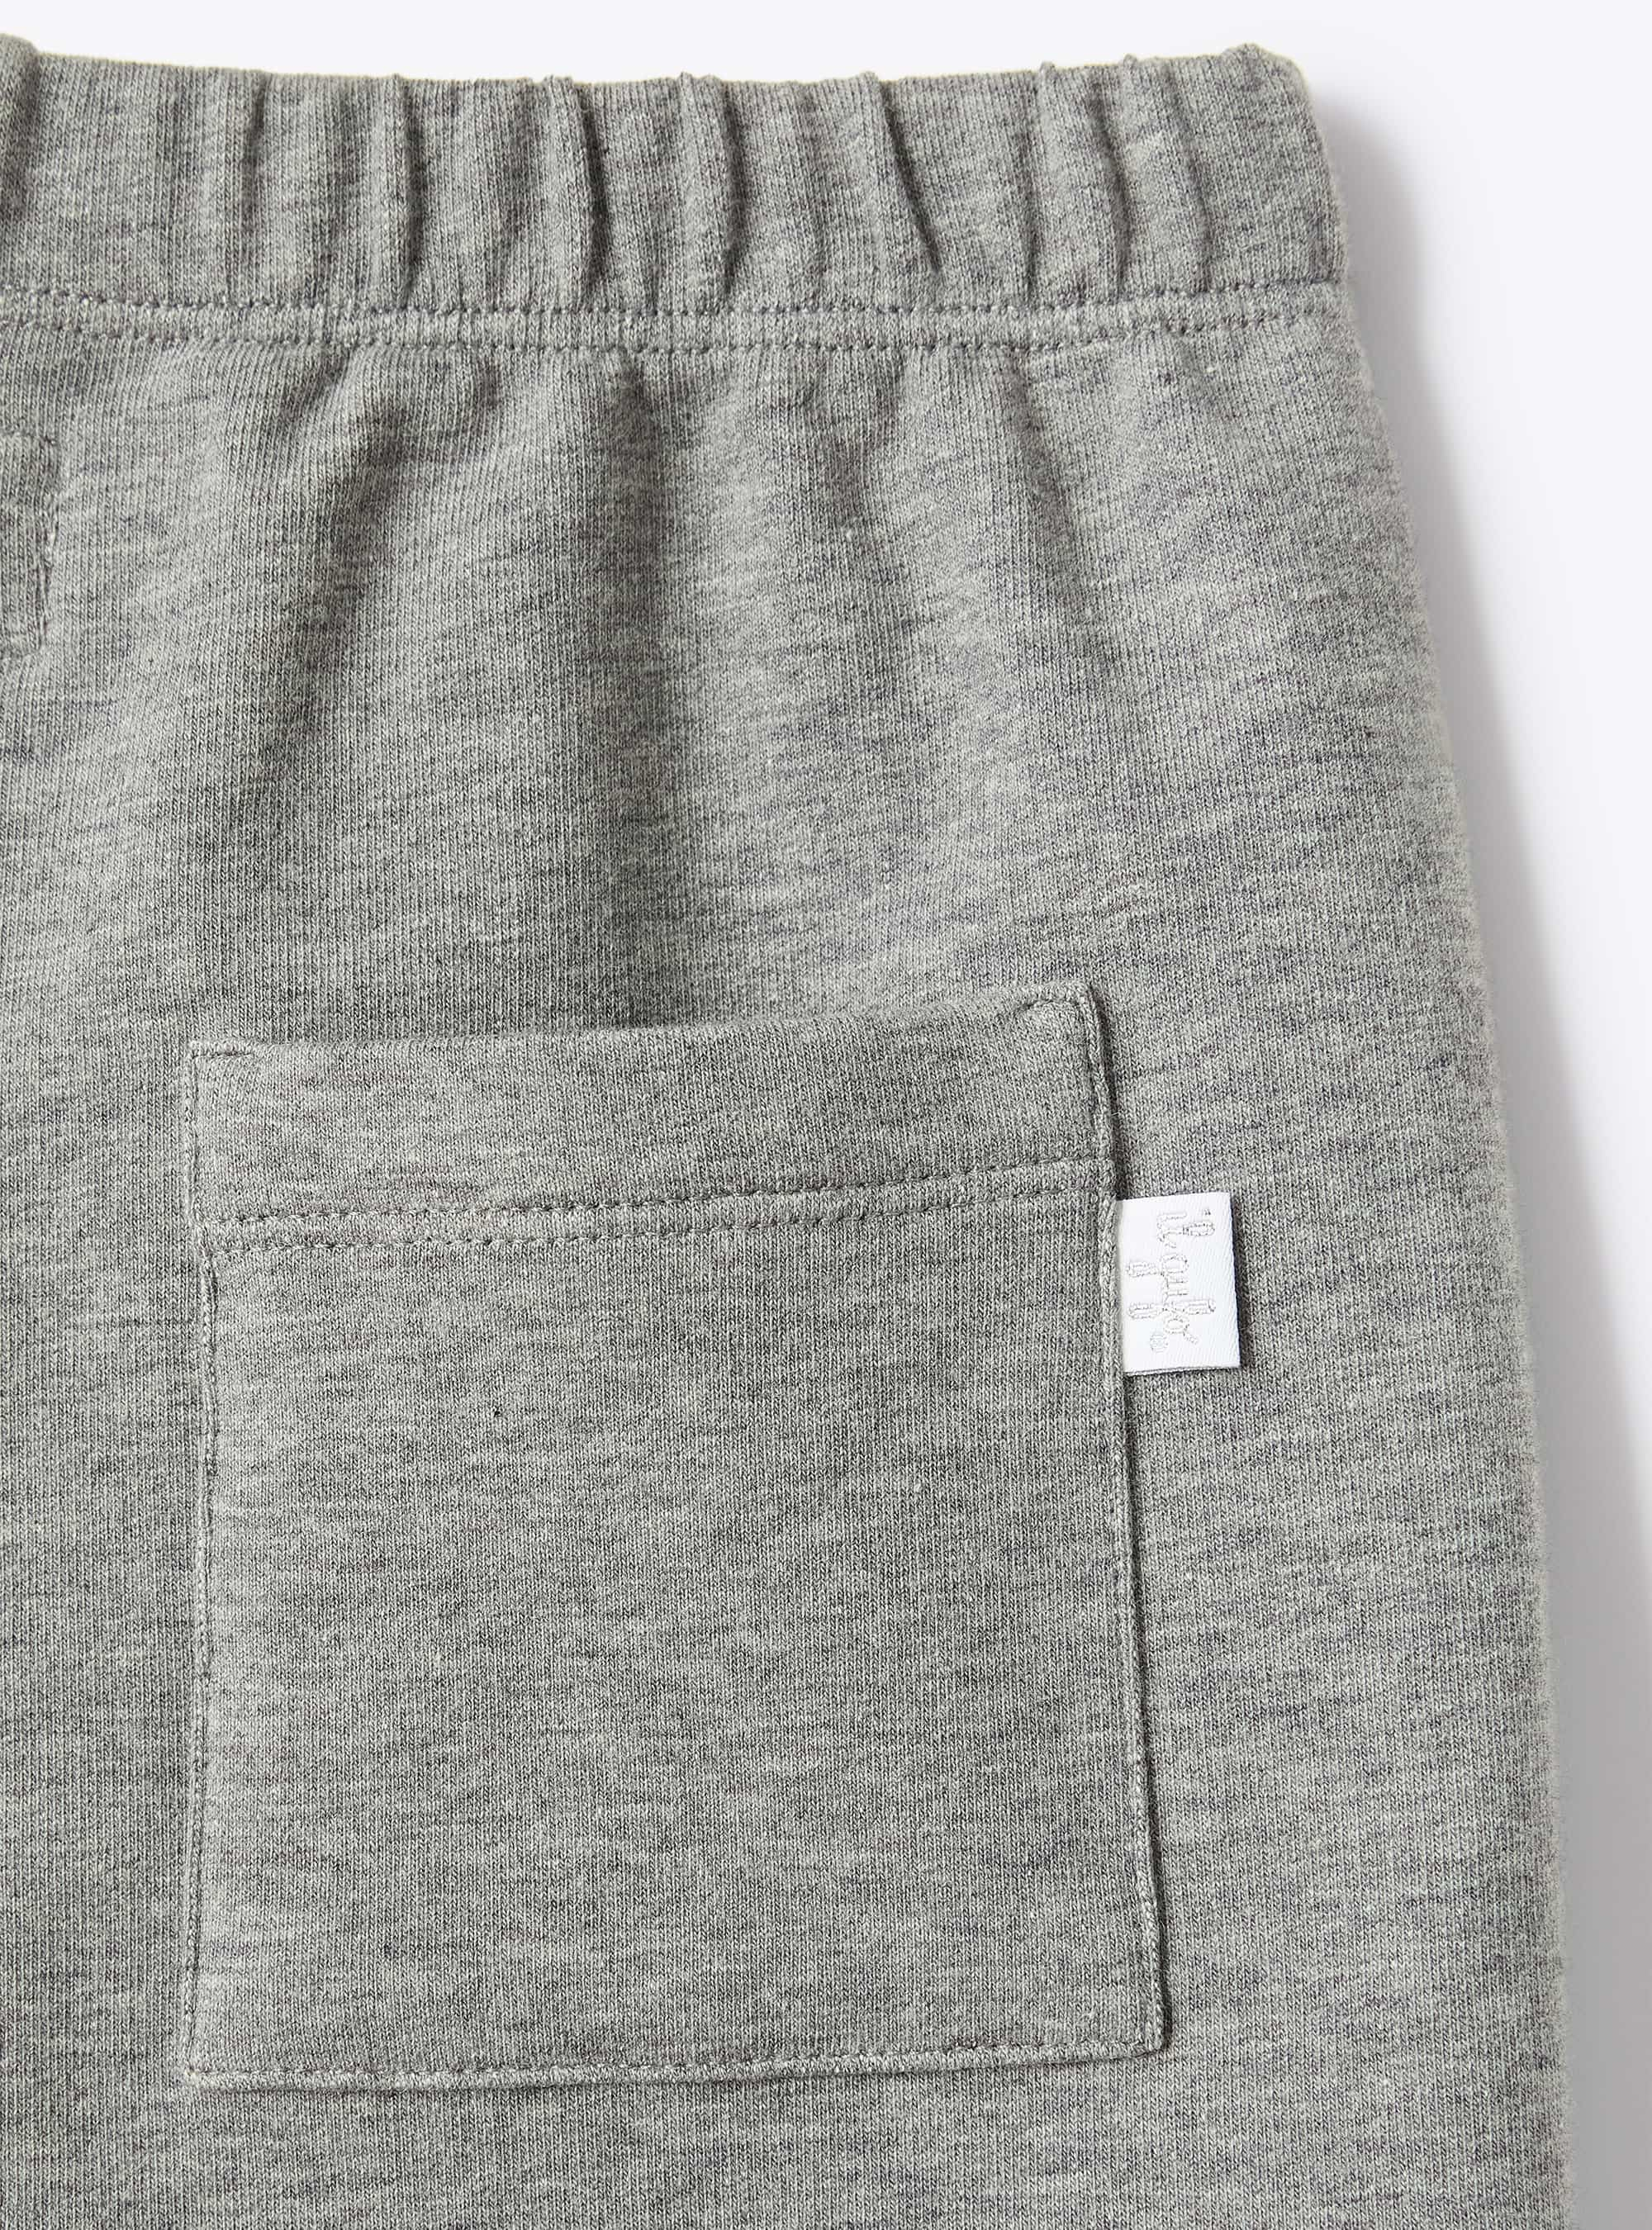 Grey stretch fleece trousers - Grey | Il Gufo